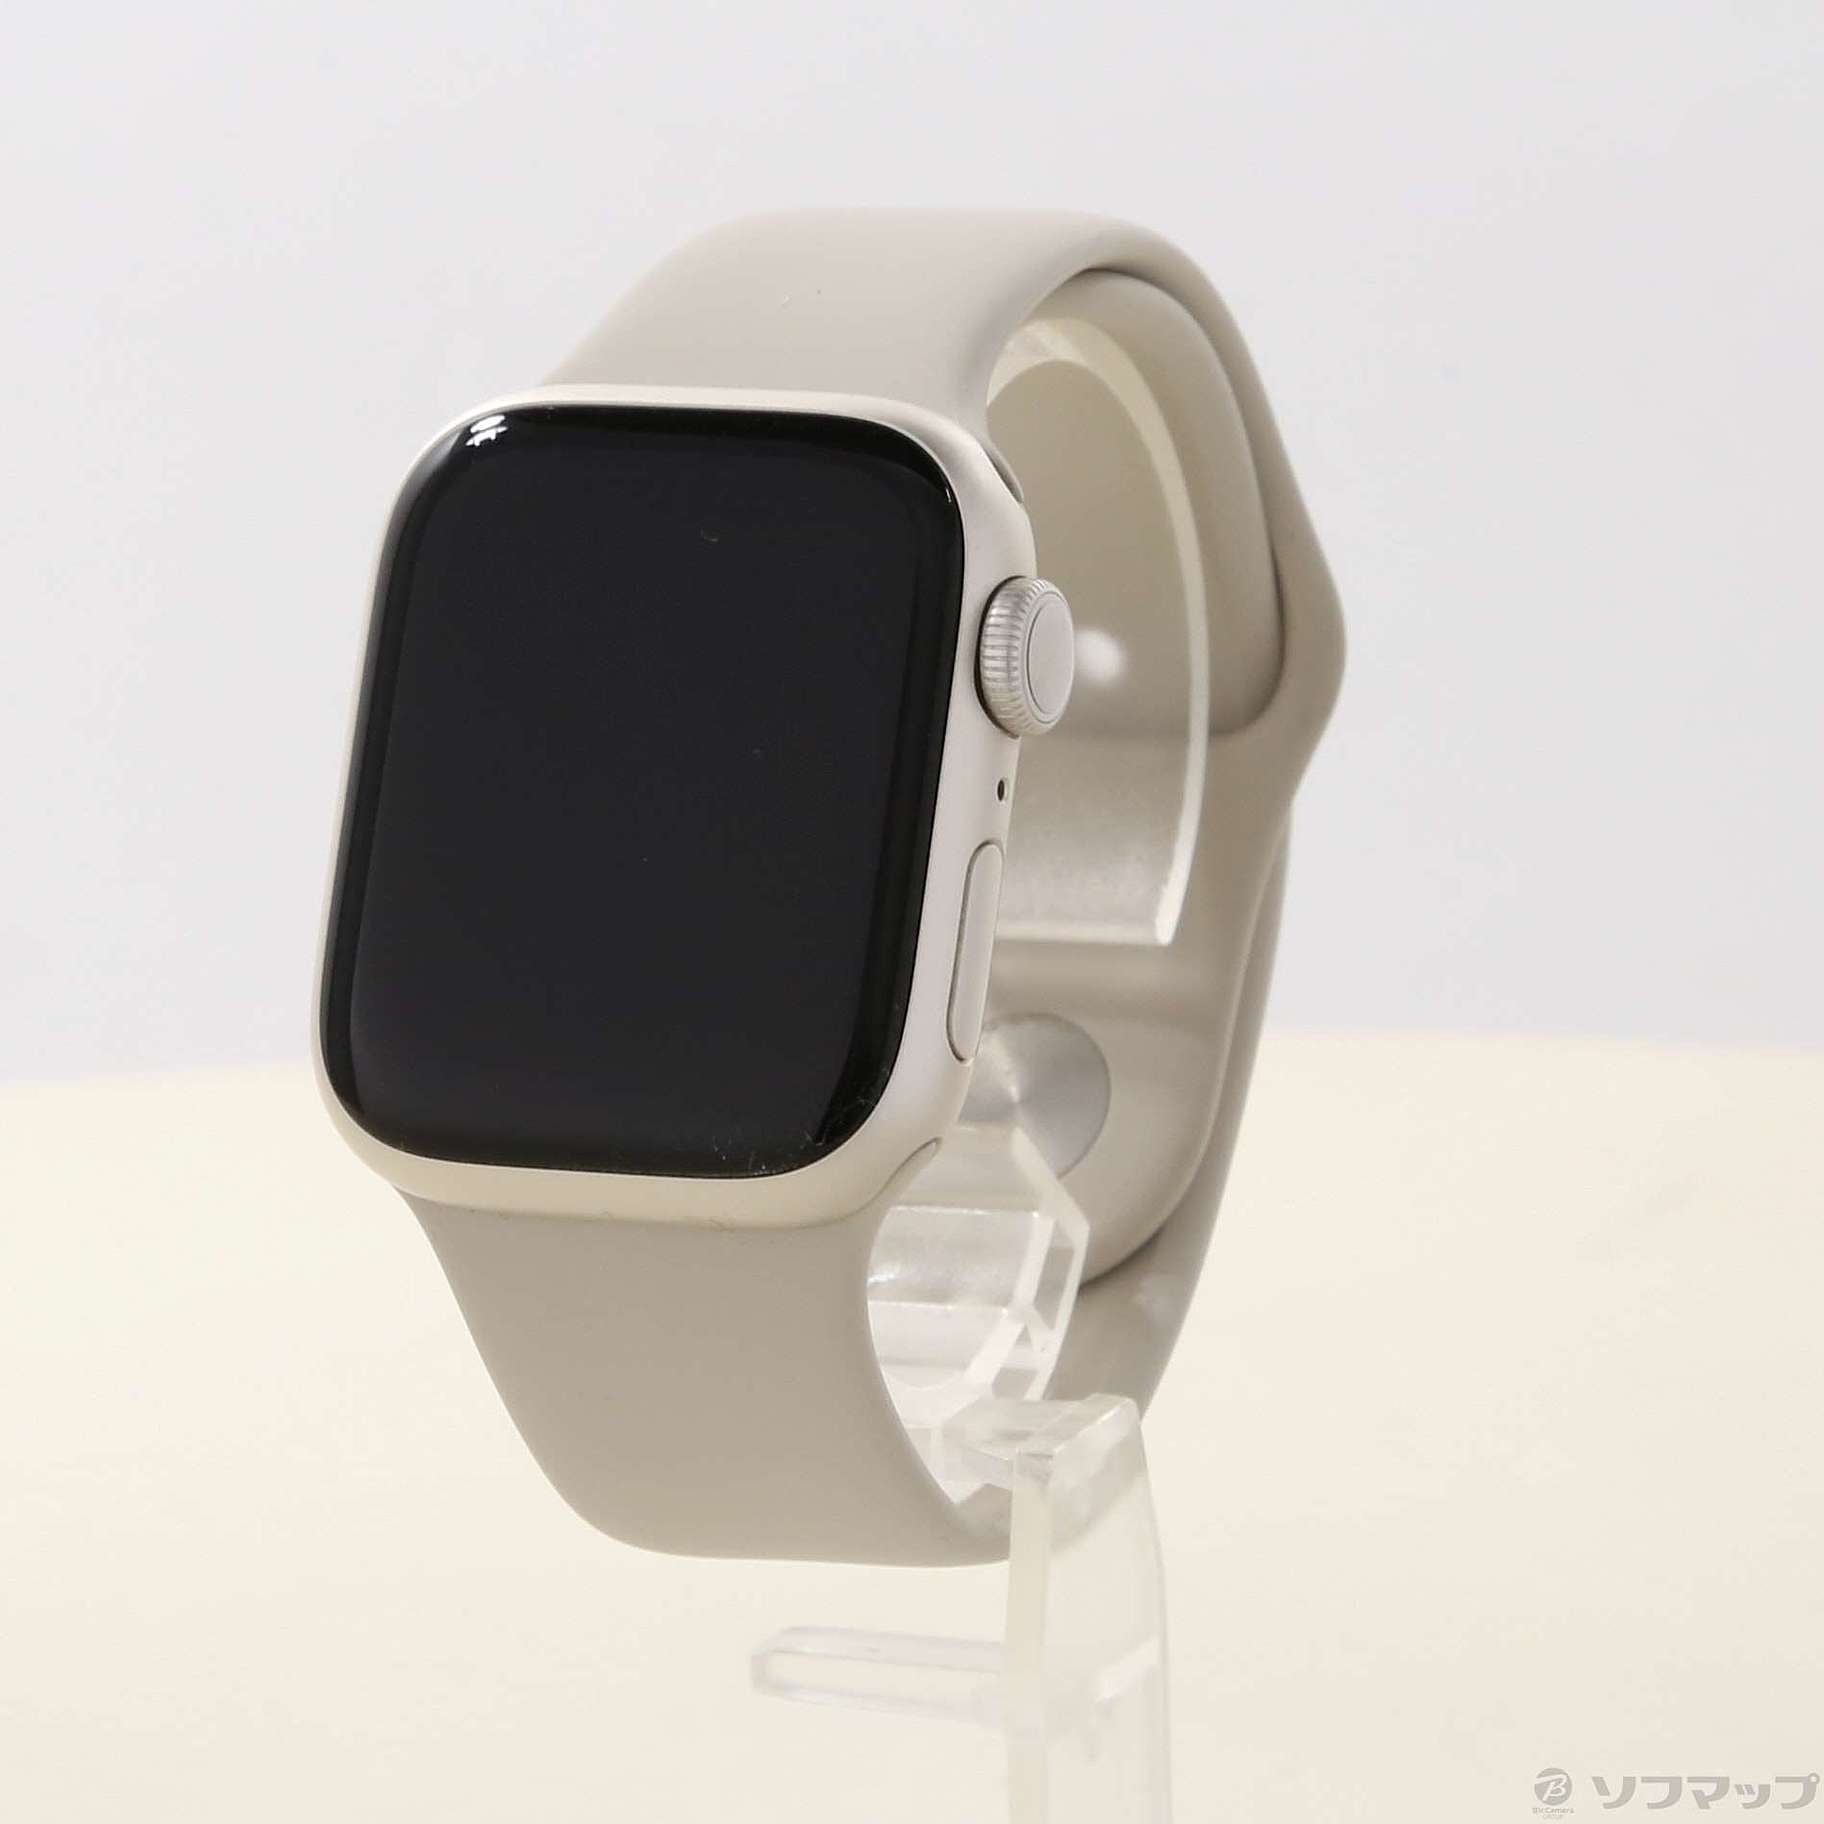 させていた Apple Watch - Apple Watch Series 7 41mm スターライト 